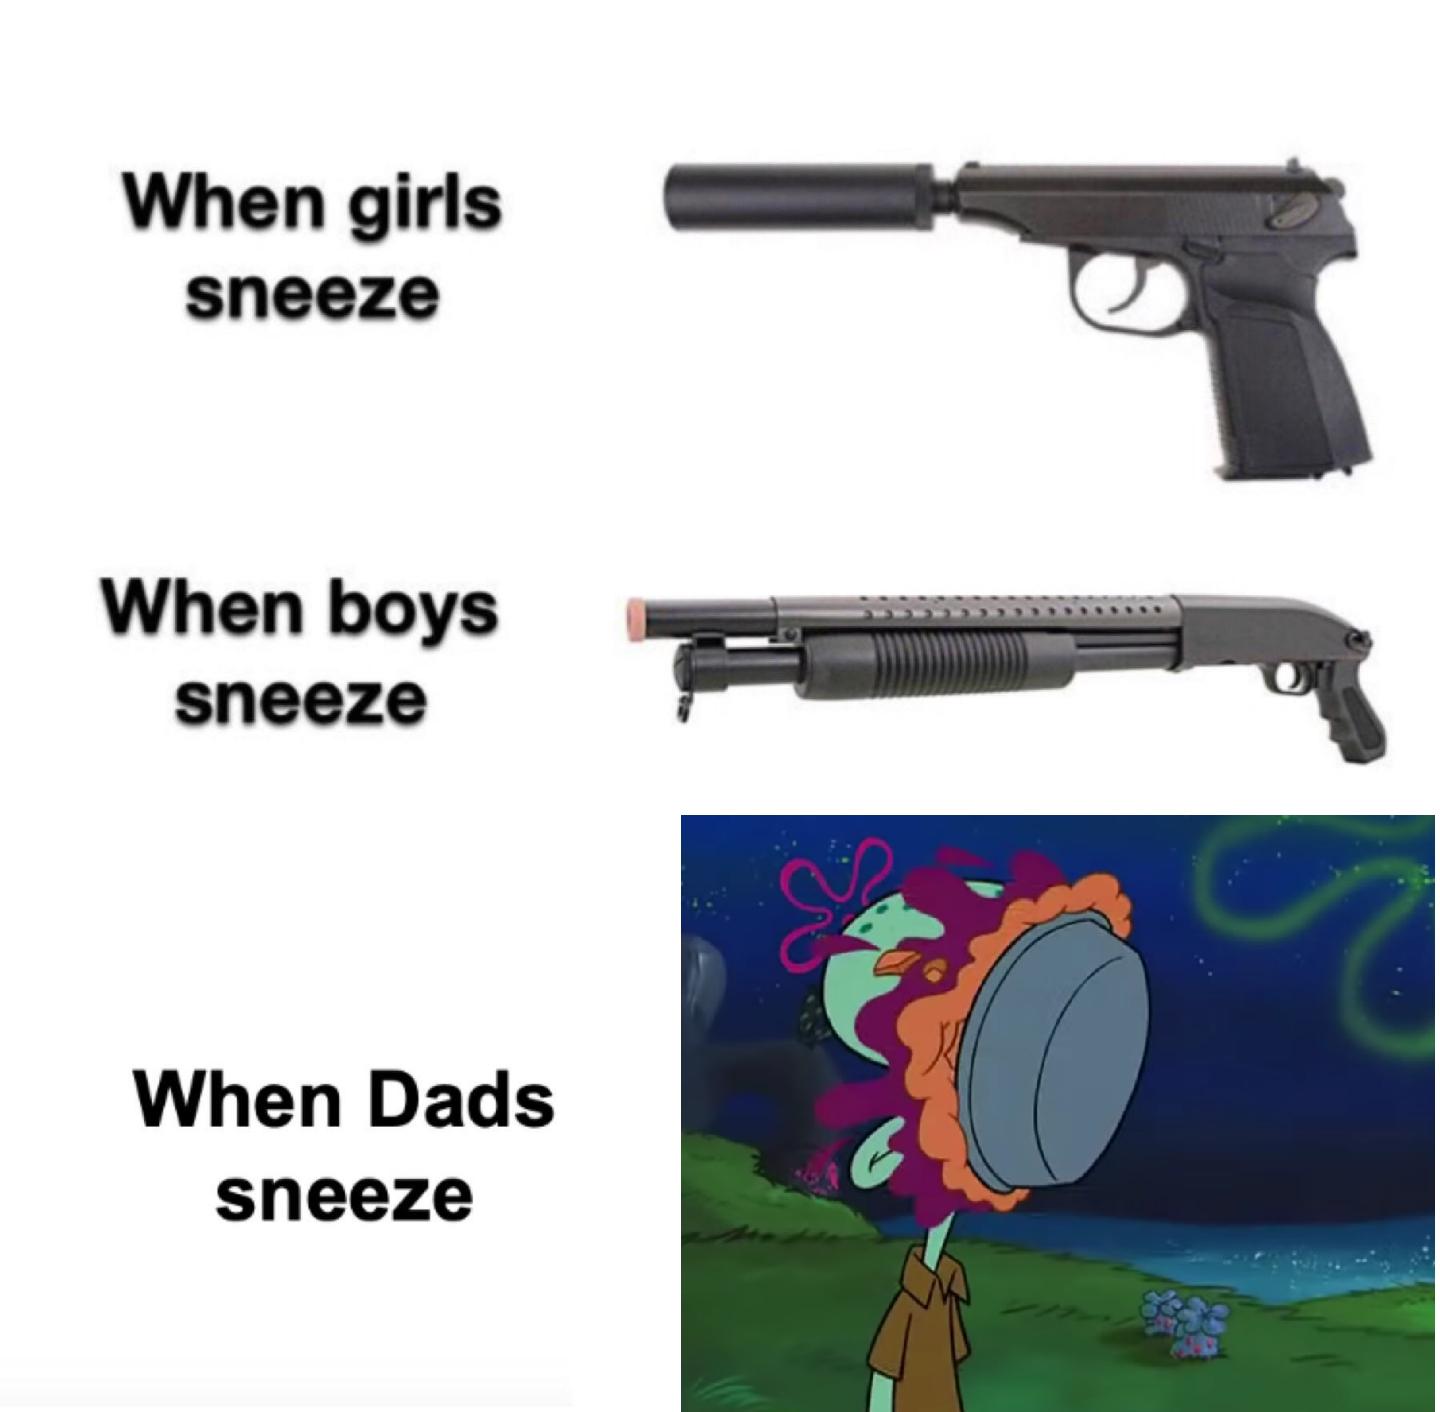 spongebob spongebob-memes spongebob text: When girls sneeze When boys sneeze When Dads sneeze 